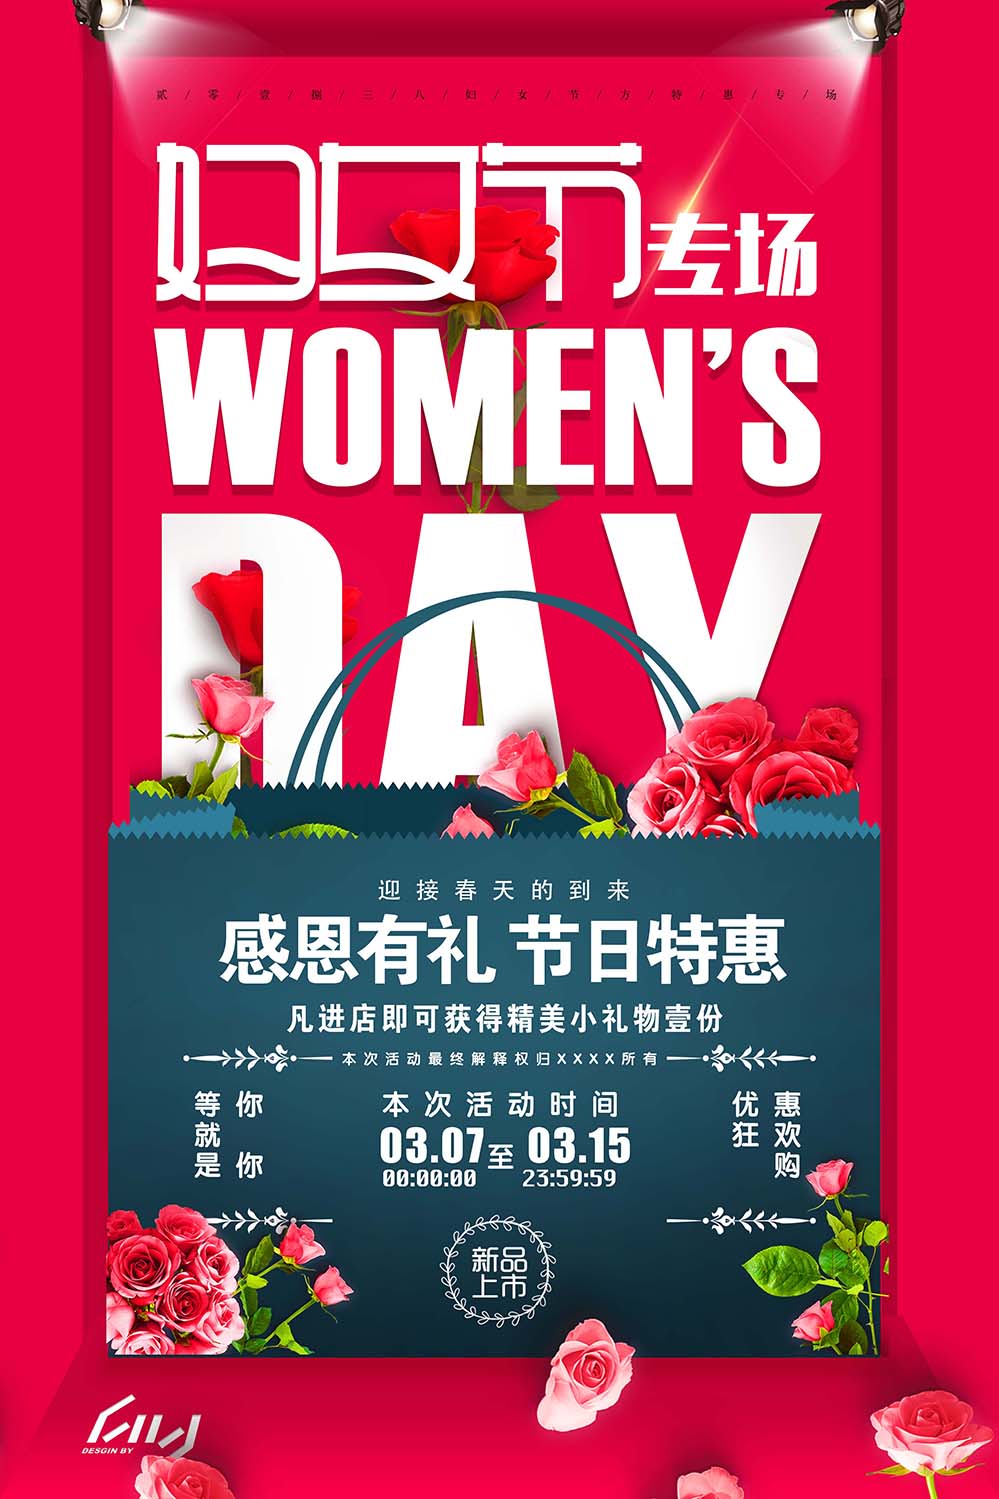 38三八妇女节促销专场海报设计PSD源文件